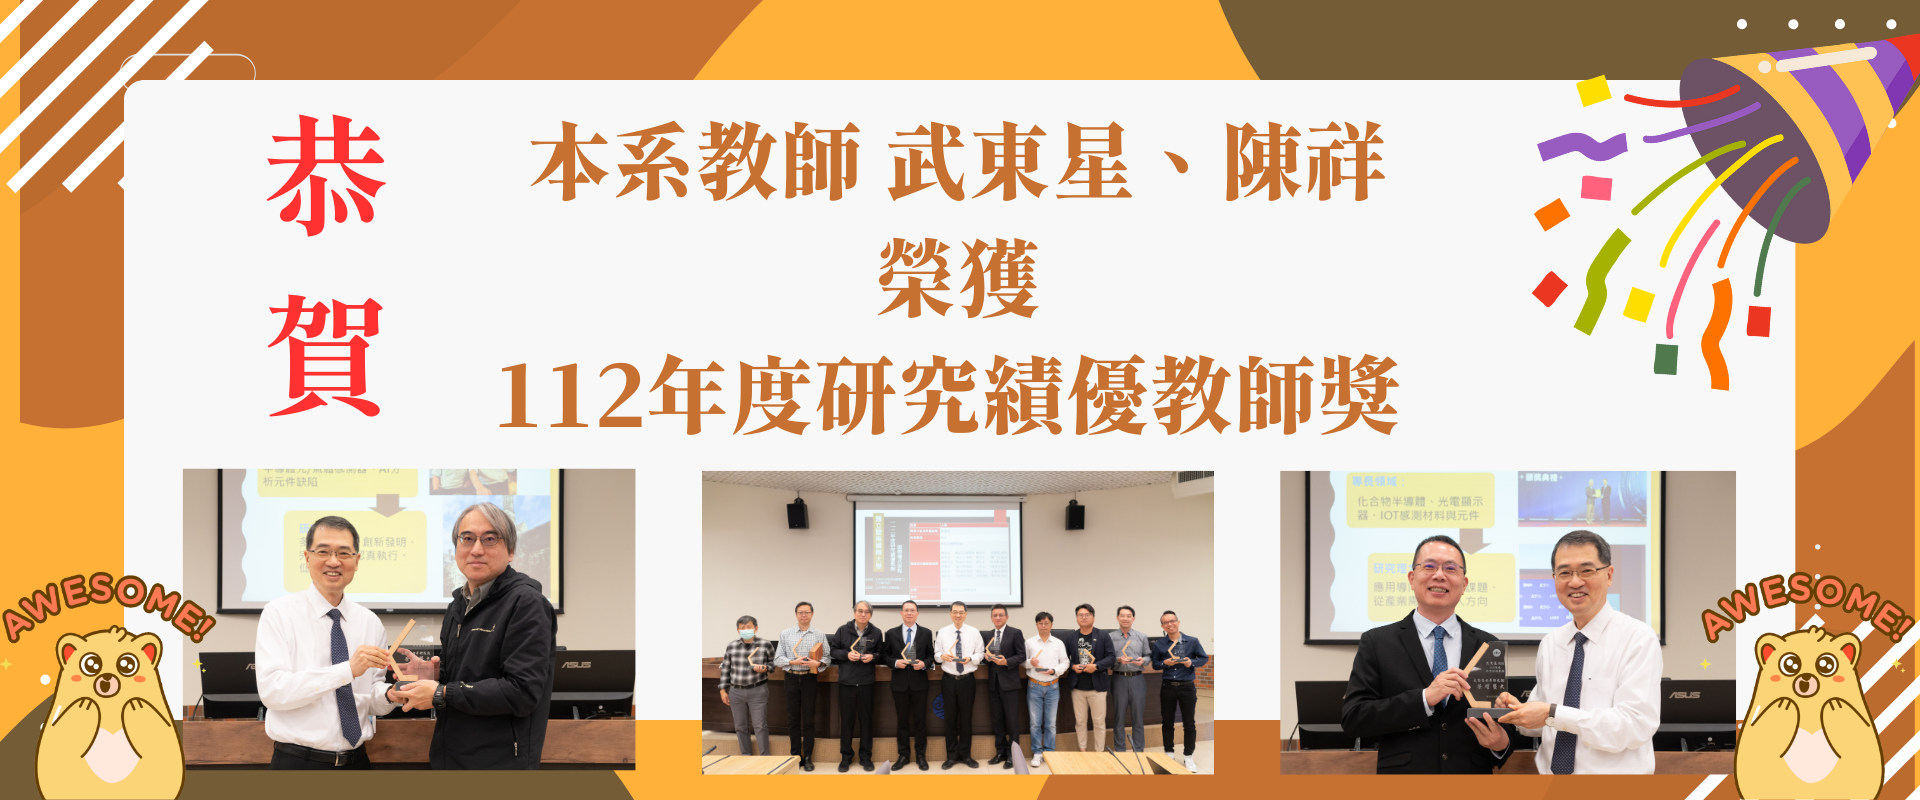 本系教師 武東星、陳祥 榮獲112年度研究績優教師獎